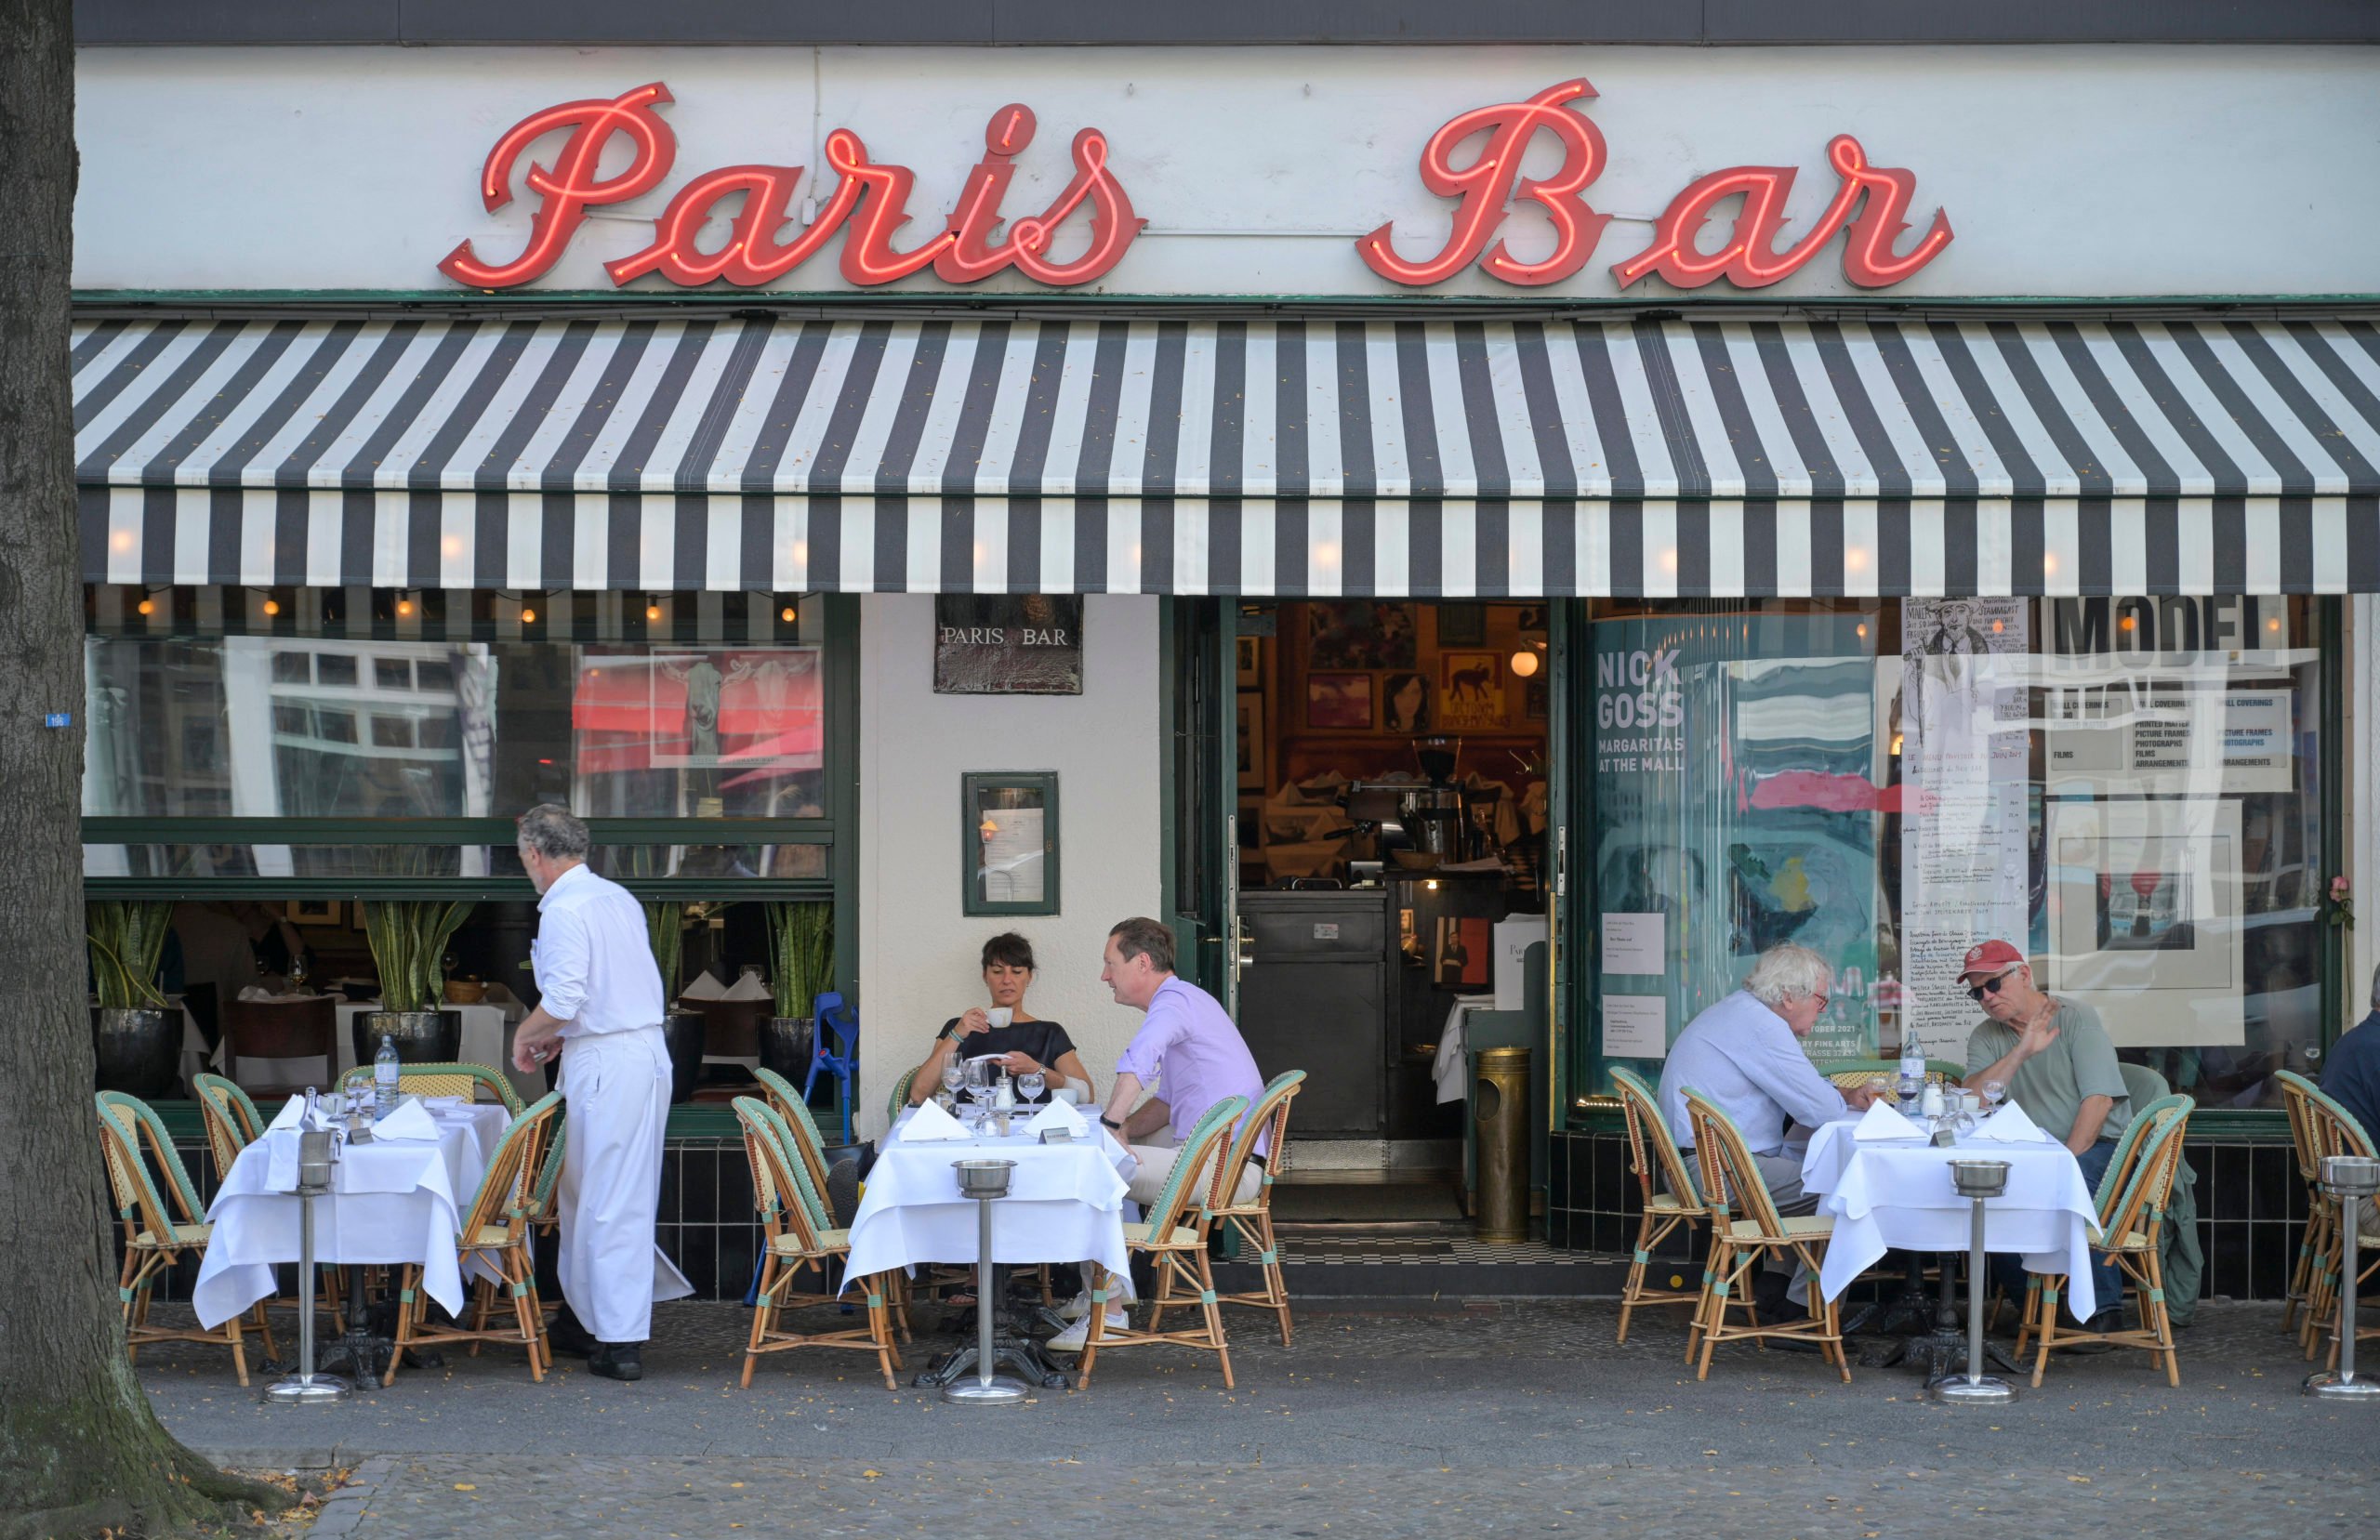 Paris Vor allem in Sachen Lässigkeit kann es die Paris Bar mit einer gemütlichen Brasserie in der französischen Metropole aufnehmen.